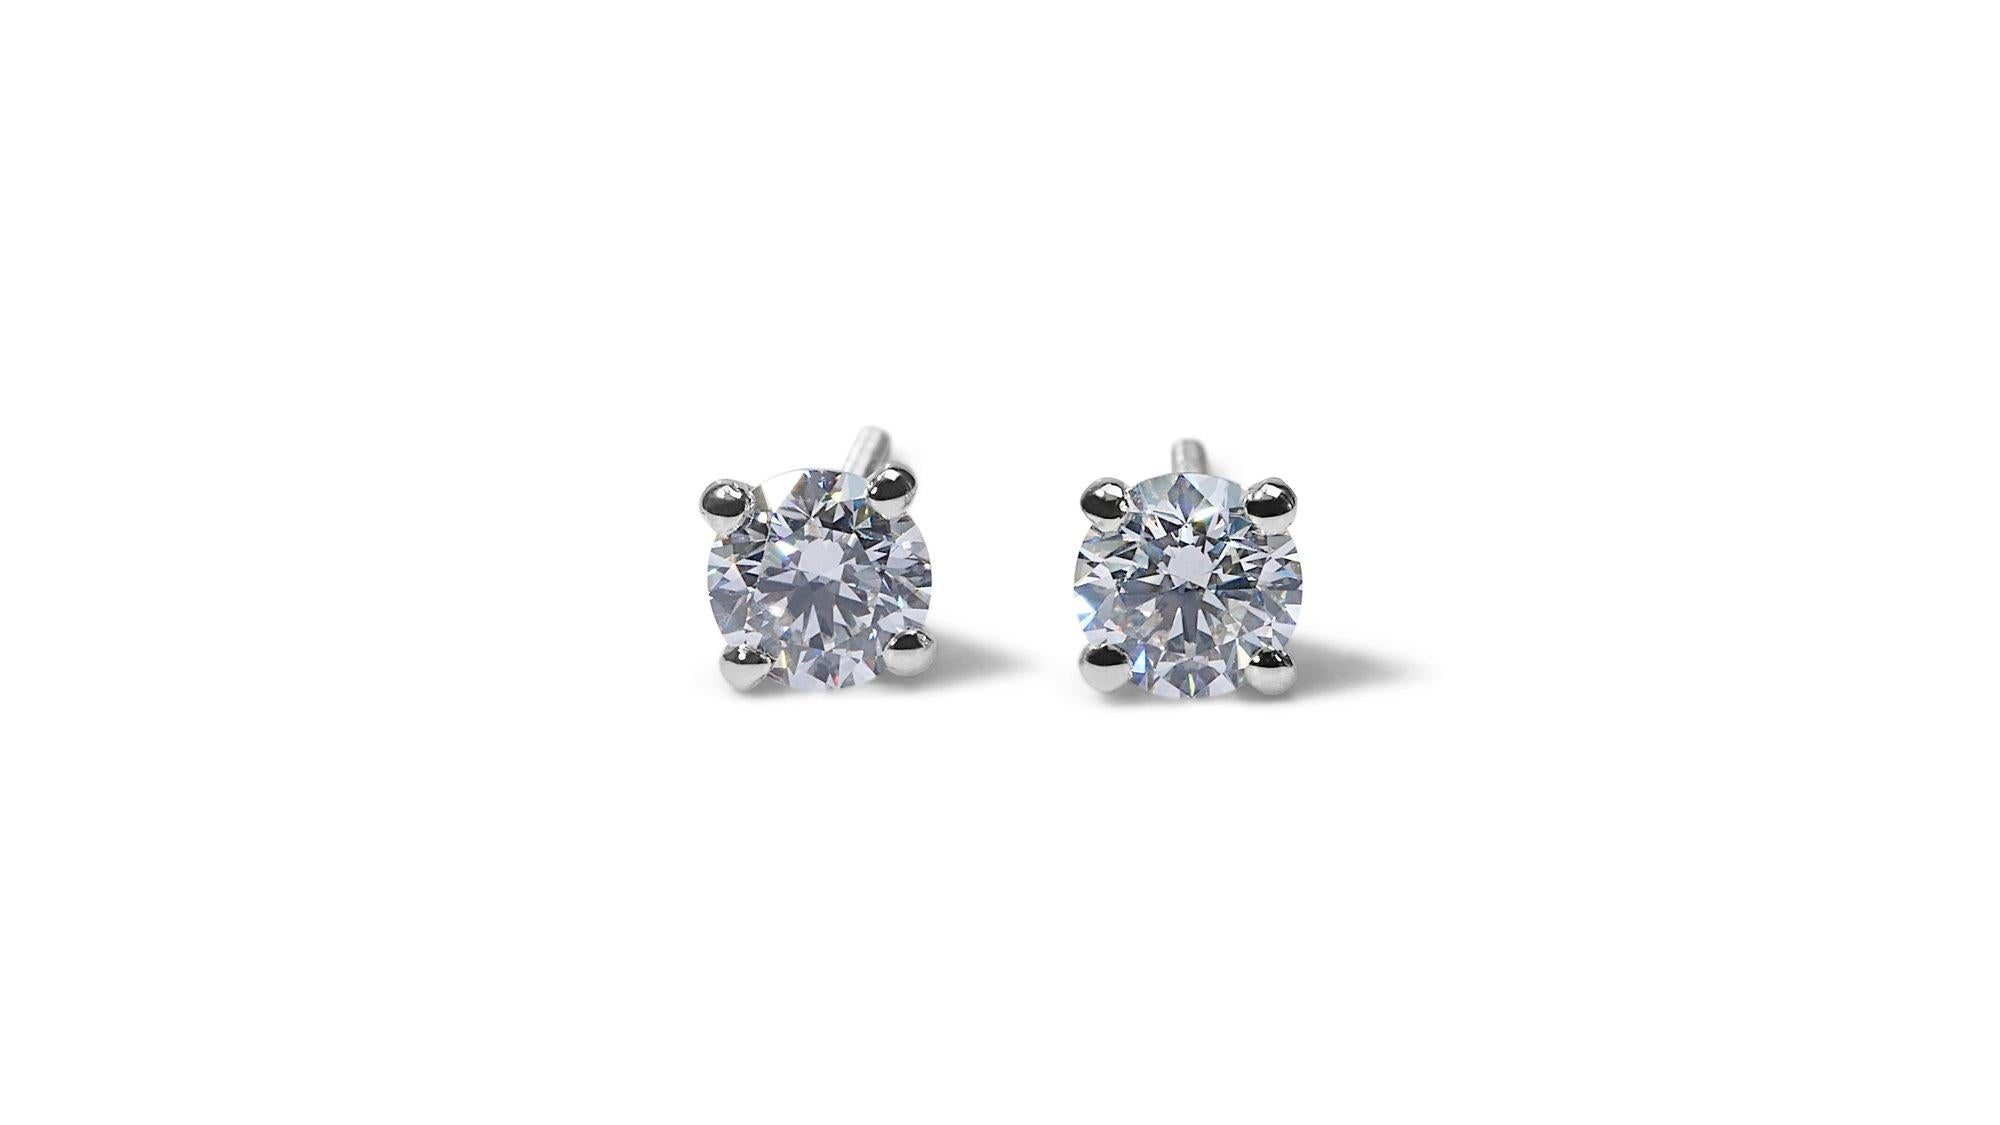 Magnifique paire de boucles d'oreilles avec d'éblouissants diamants ronds de 0,8 carat. Le bijou est fabriqué en or blanc 18 carats avec un polissage de haute qualité. Il est accompagné d'un certificat GIA et d'une boîte à bijoux de luxe.

2